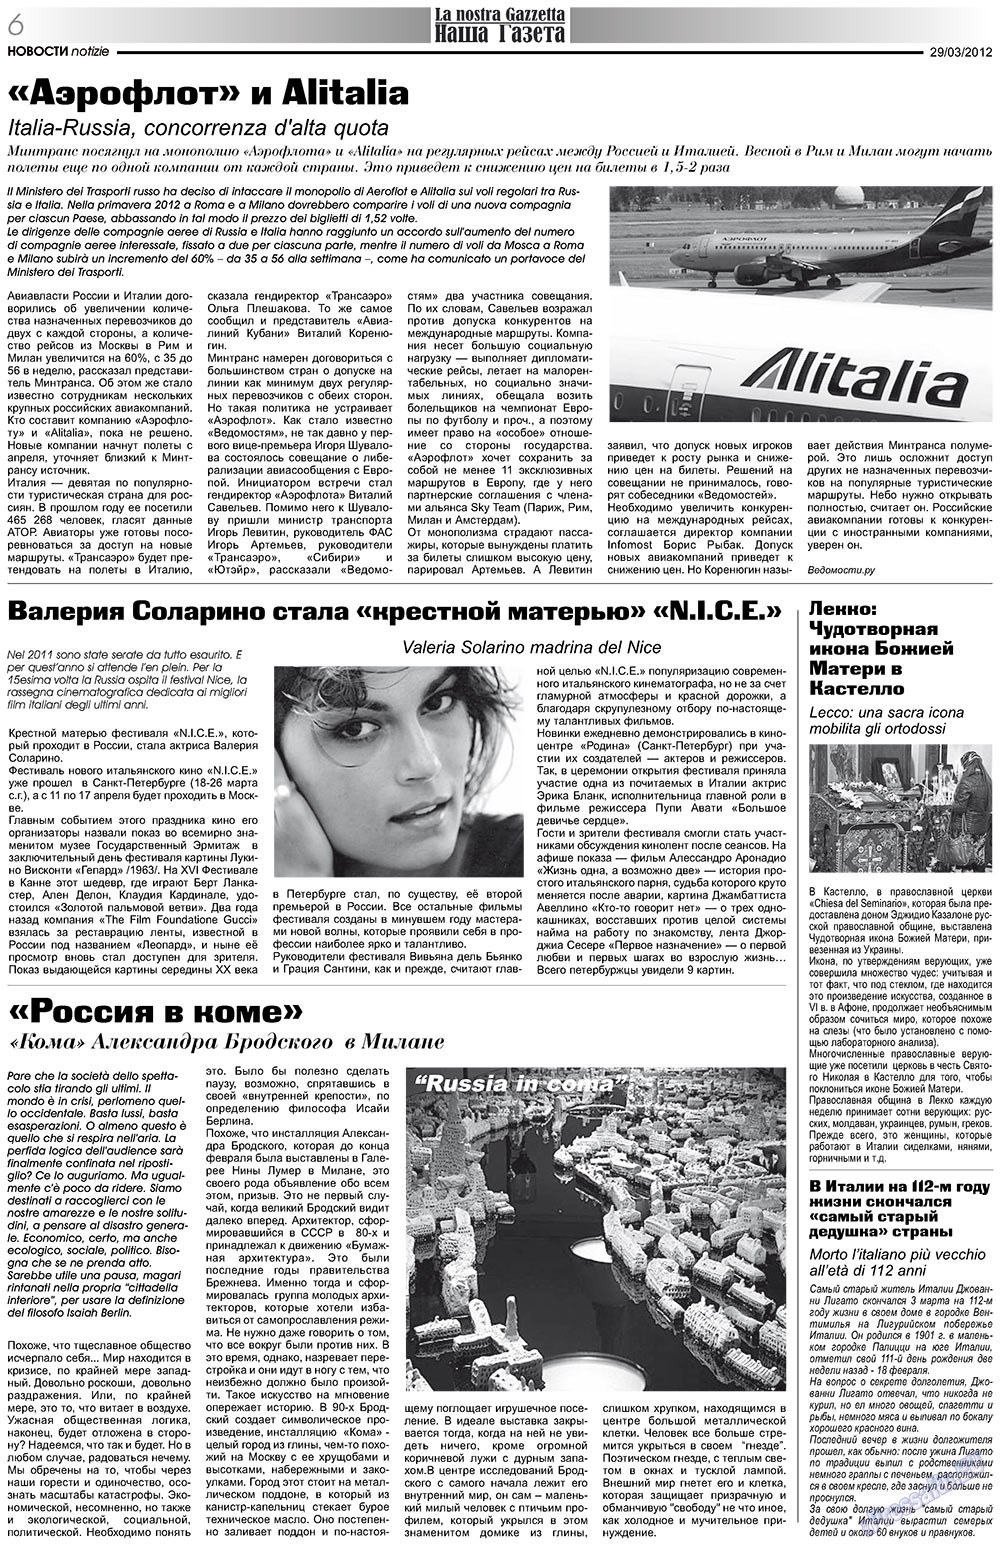 Nascha Gazeta (Zeitung). 2012 Jahr, Ausgabe 153, Seite 6